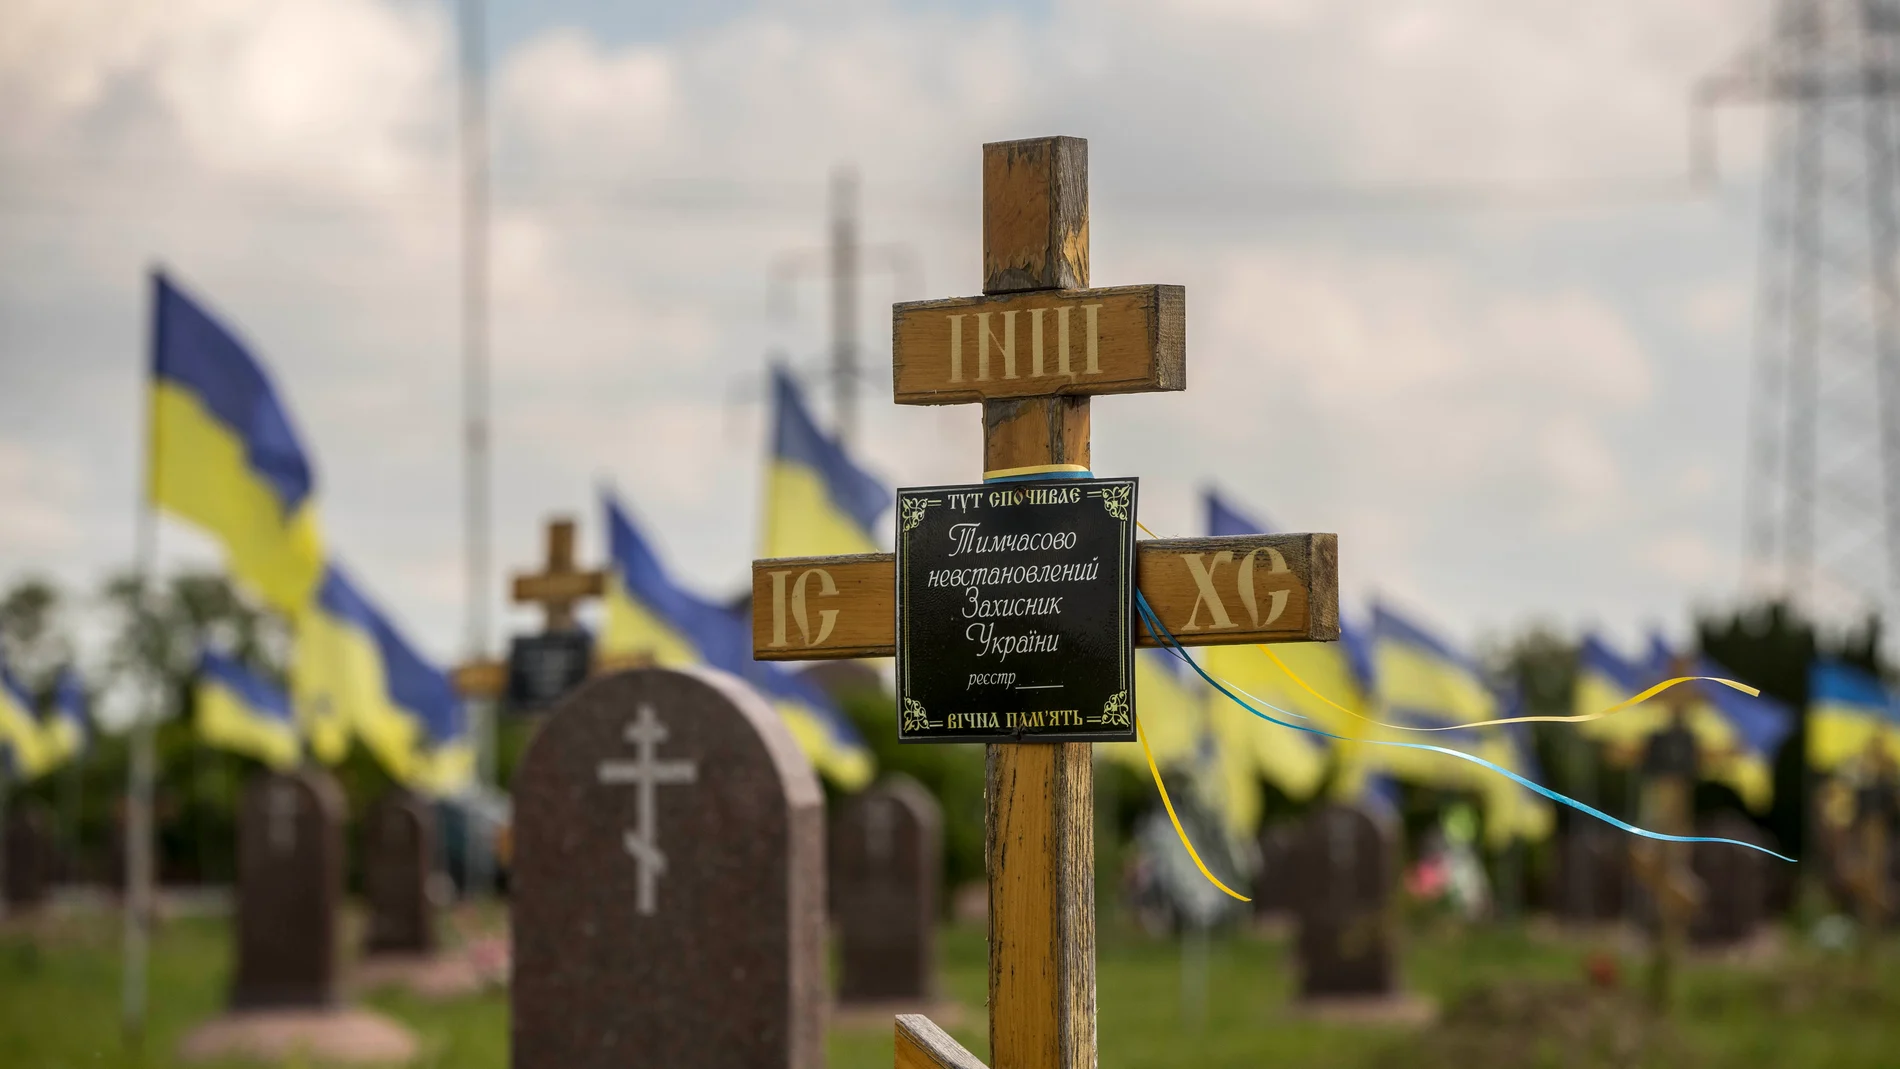 Vista de cruces en el sector de soldados ucranianos fallecidos en la guerra con Rusia, en el cementerio de Dnipro (Ucrania).